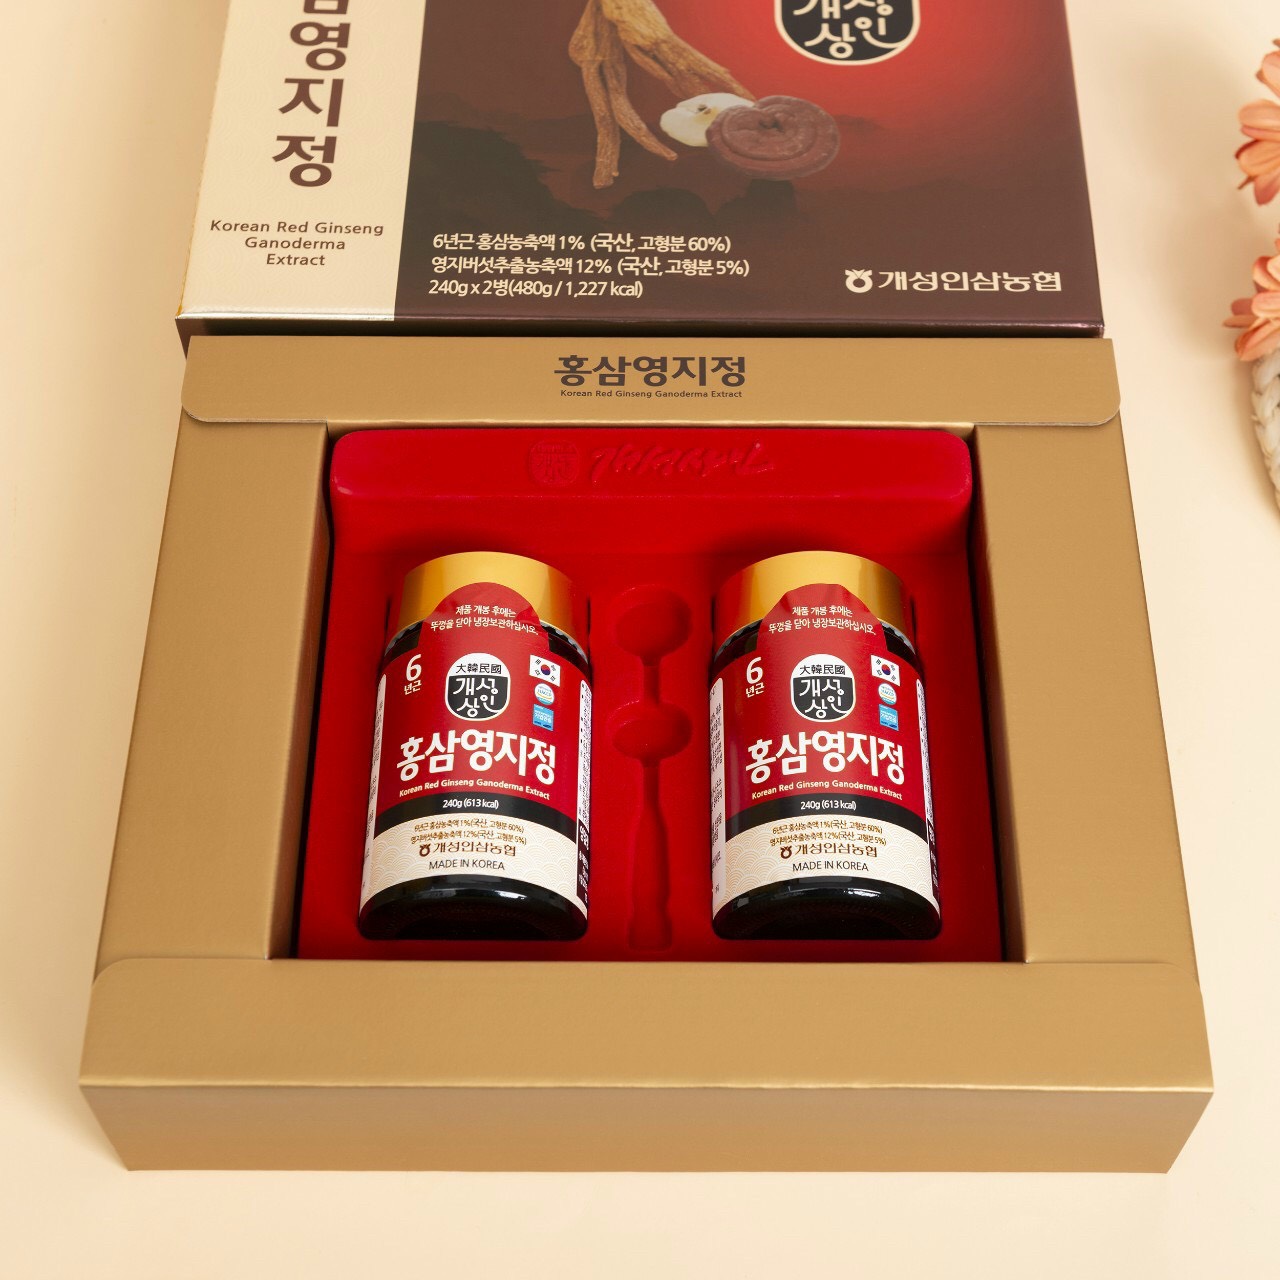 Cao hồng sâm linh chi Hàn Quốc (Chiết xuất sâm linh chi) - chiết xuất từ nhân sâm Hàn Quốc 6 năm tuổi và nấm linh chi, tăng cường sinh lực, phục hồi sức khỏe, tốt cho người mỡ máu, tiểu đường, huyết áp, dạ dày, chống lão hóa